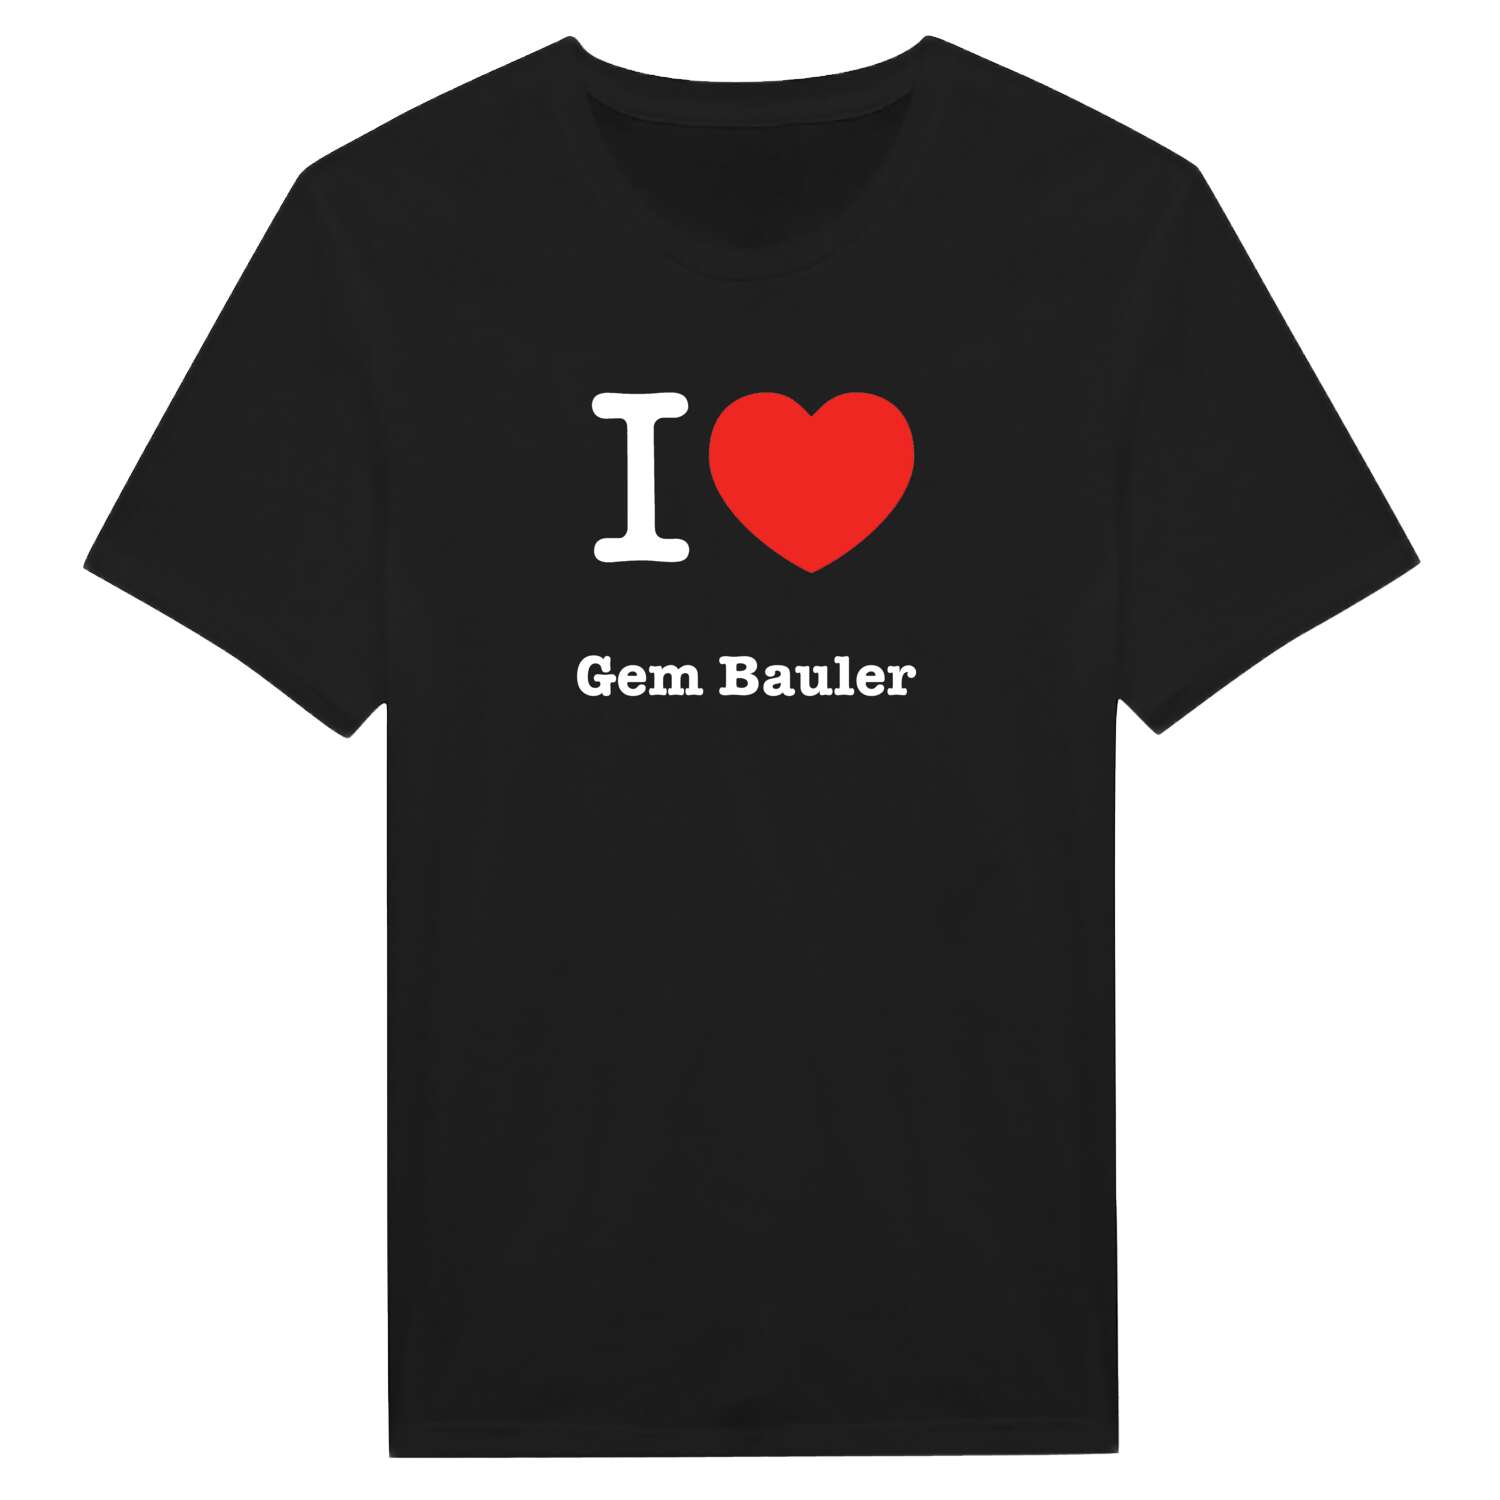 Gem Bauler T-Shirt »I love«